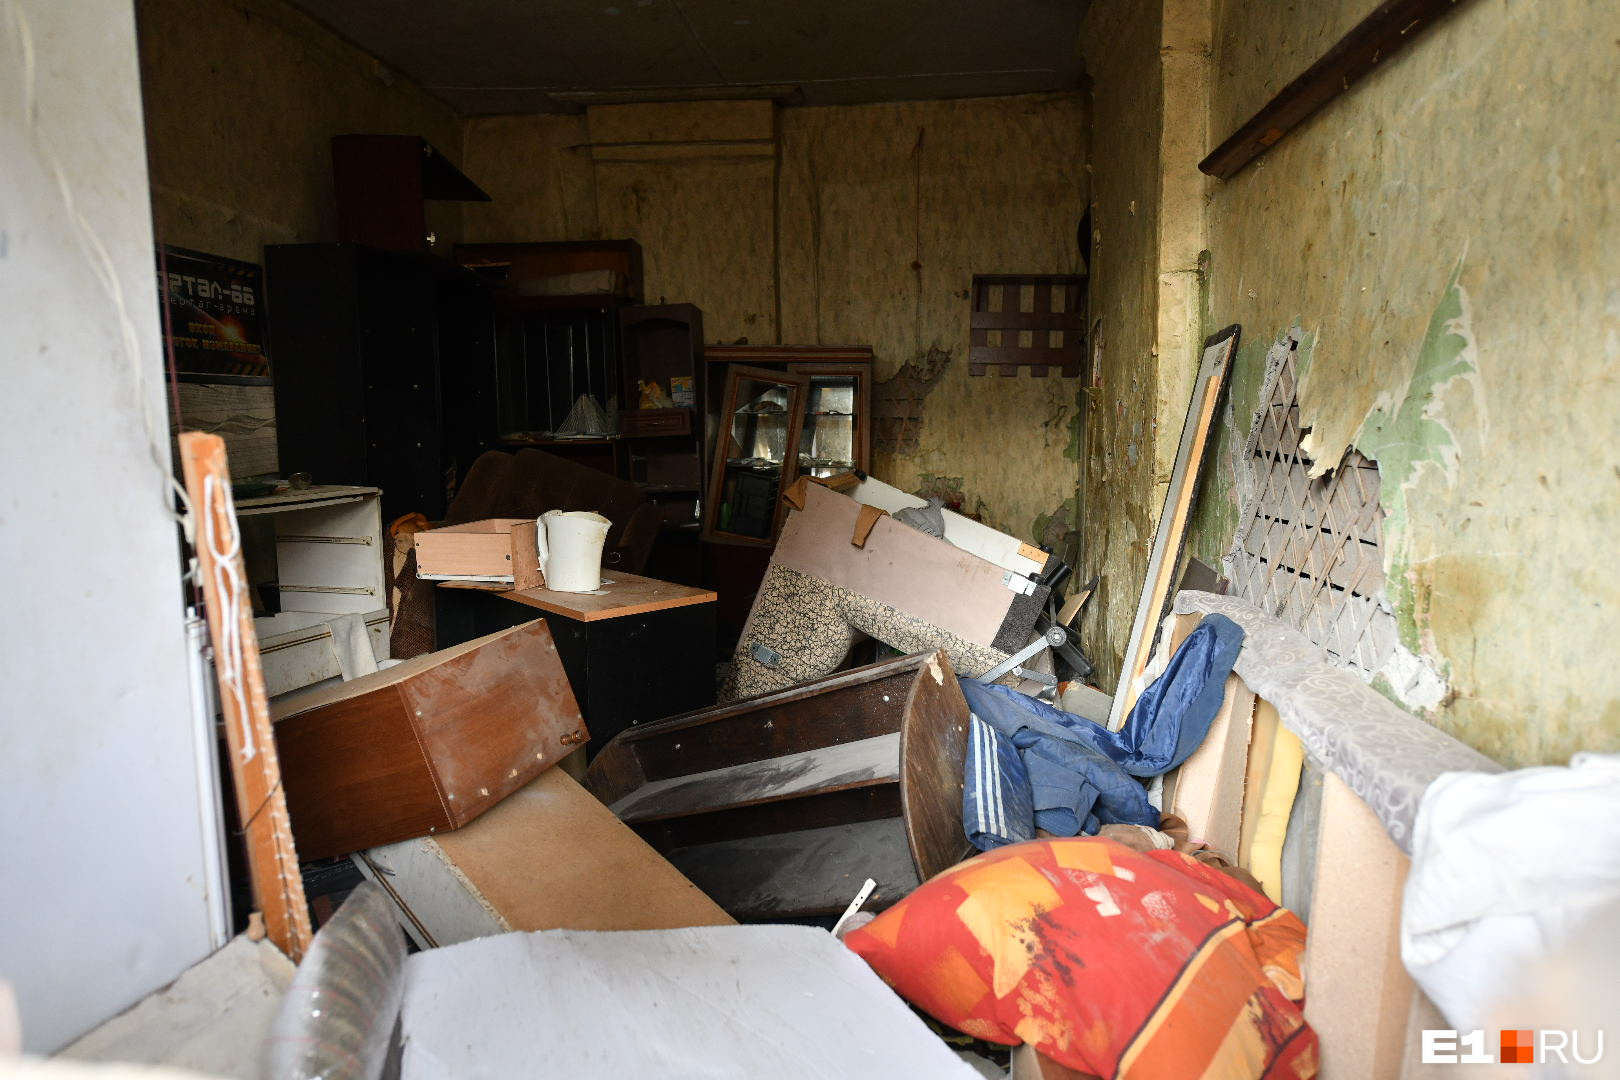 Через вынесенные окна нежилой квартиры видно старую мебель